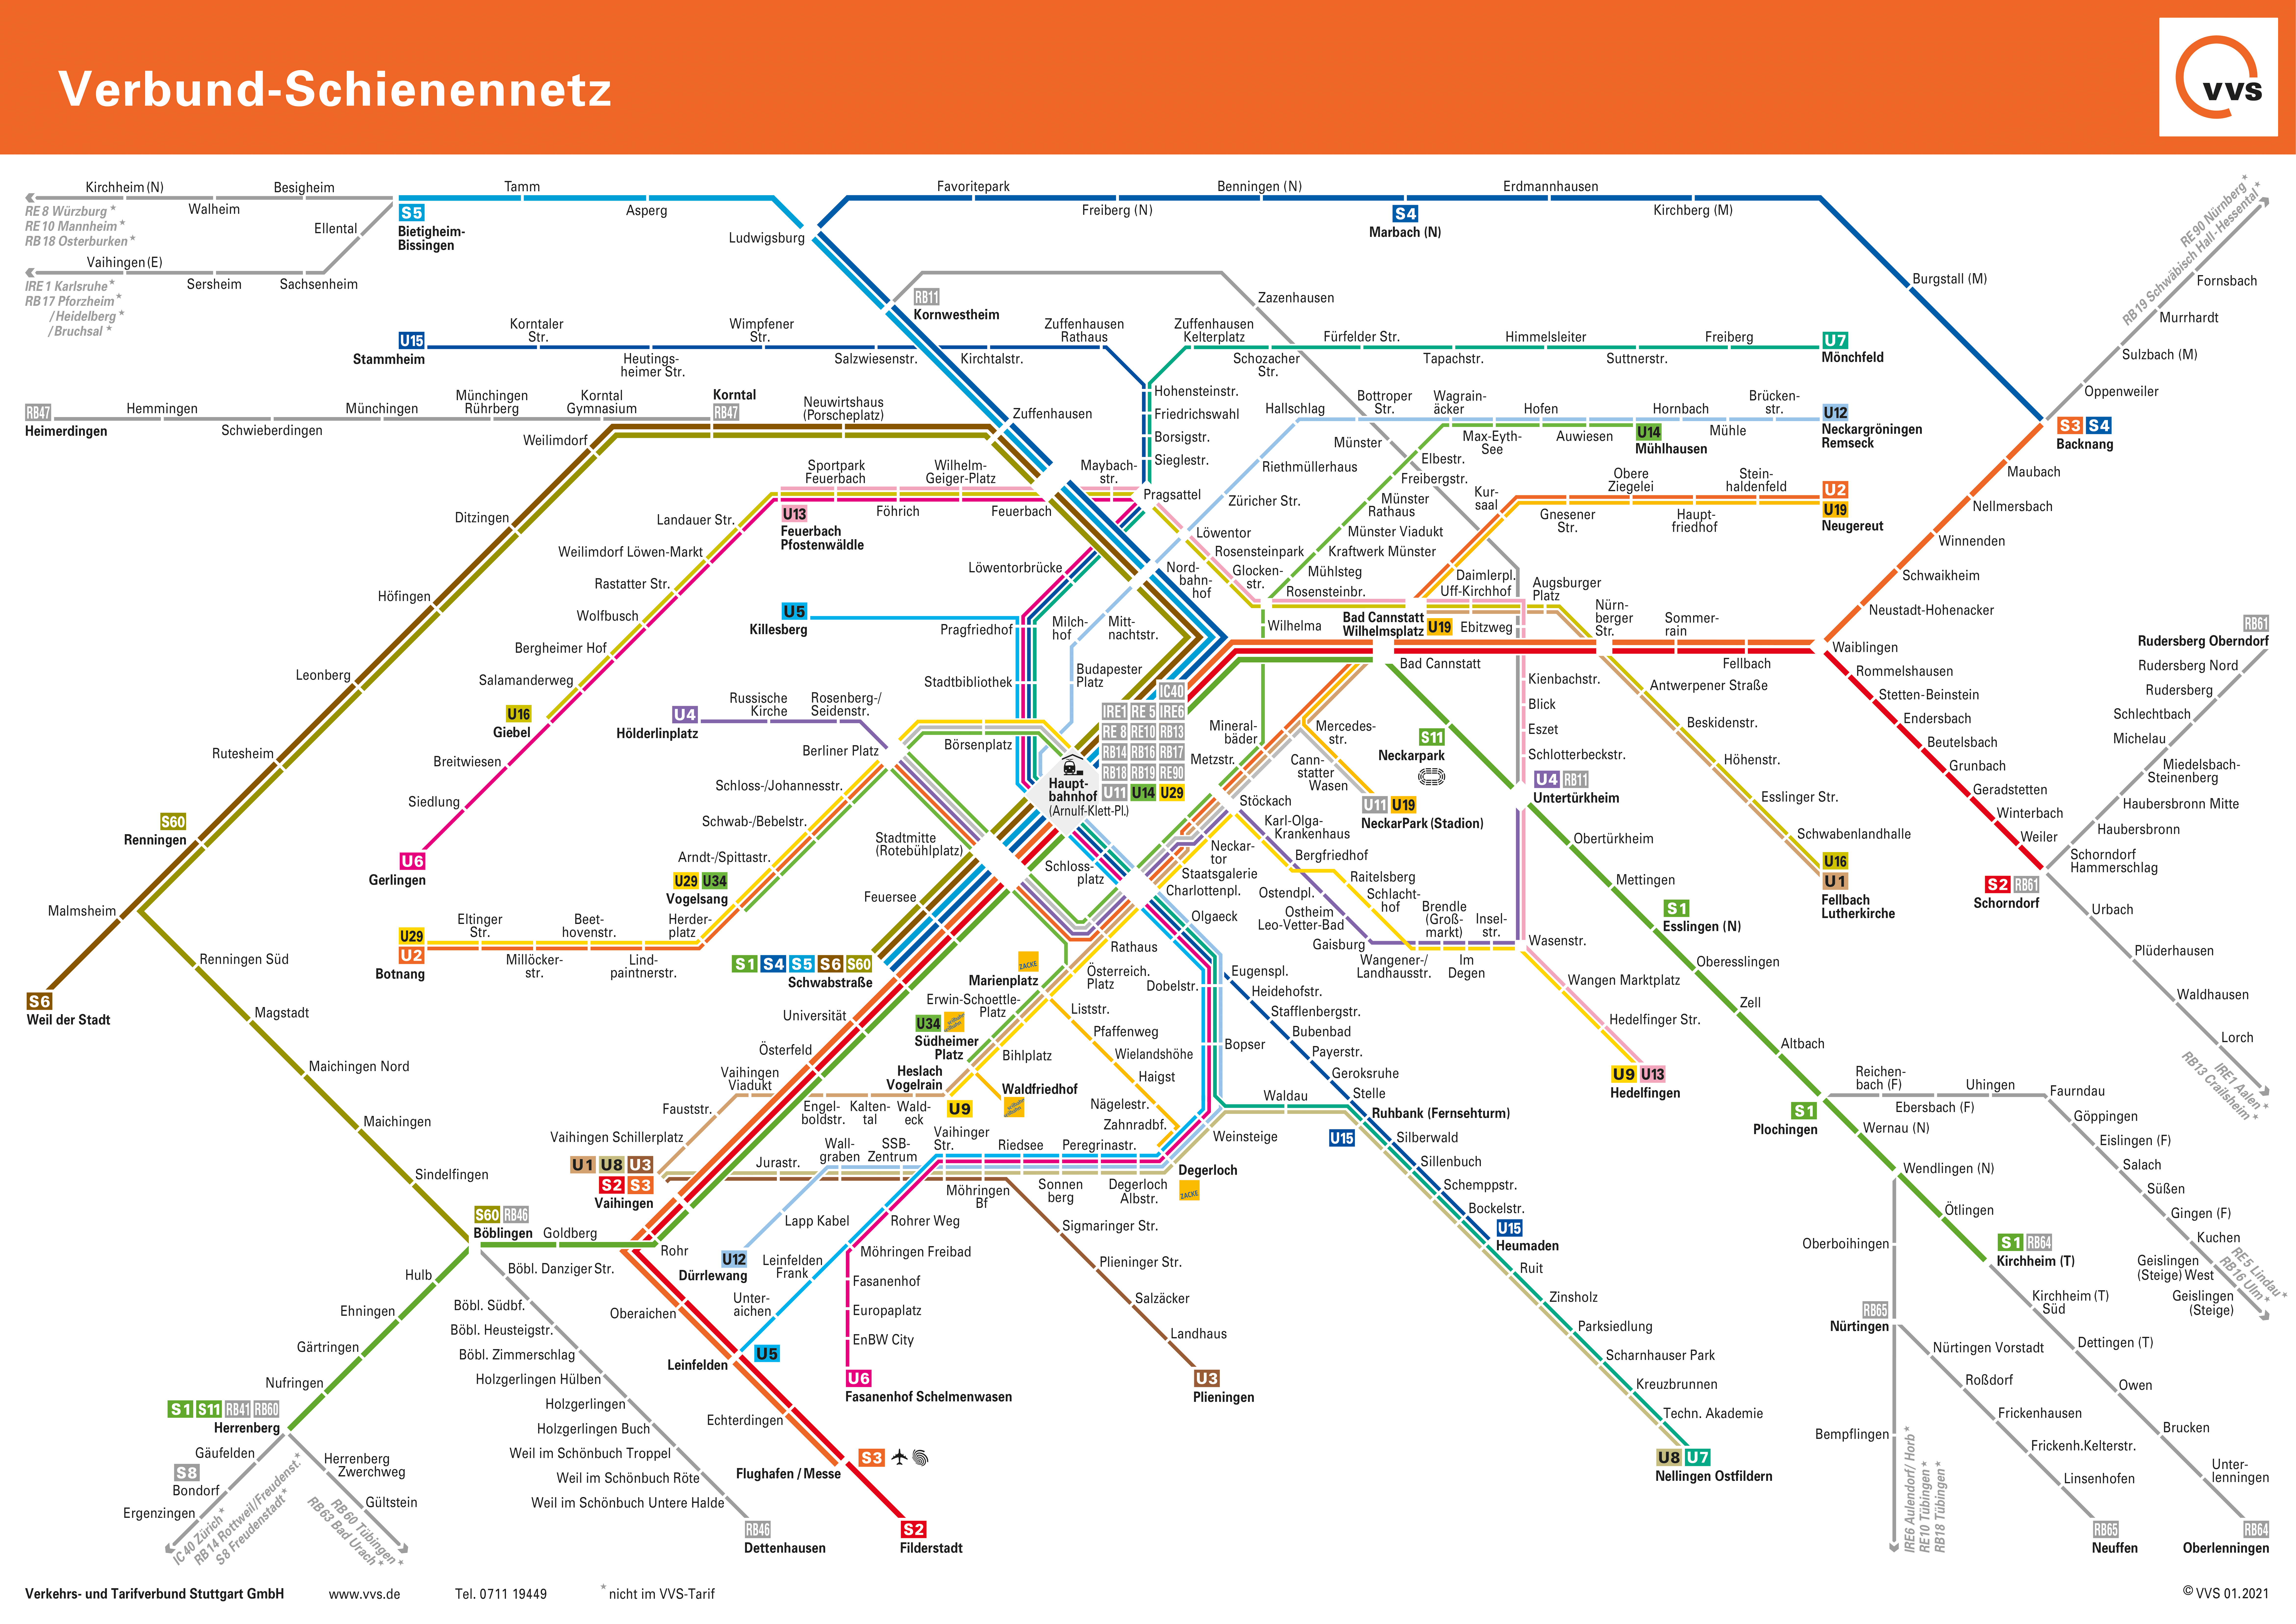 VVS Verbund Schienennetzplan